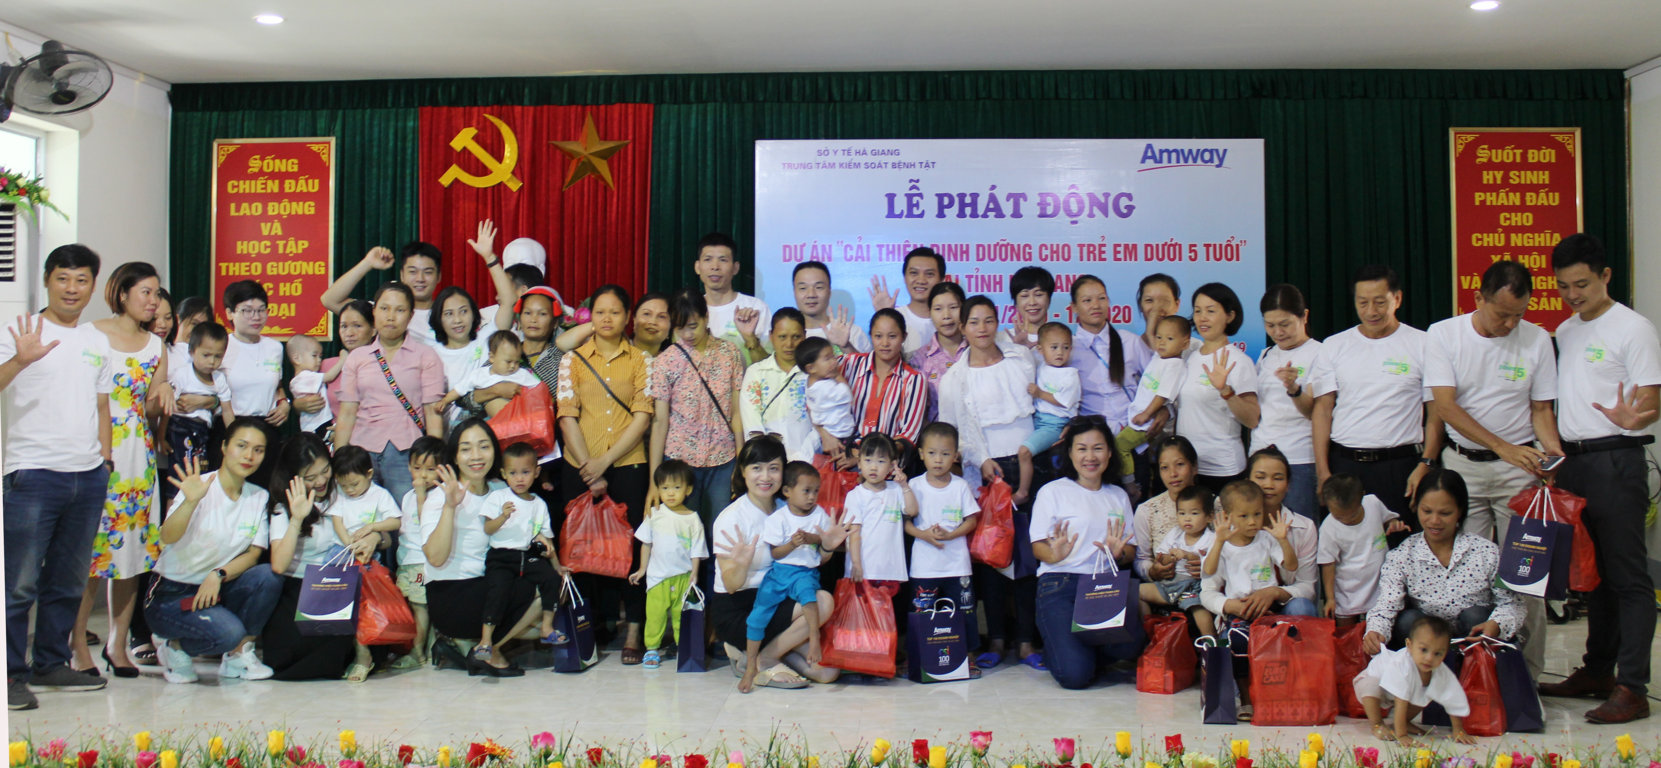 Dự án trao 20 xuất quà cho các cháu bị suy dinh dưỡng của xã Phương Độ, thành phố Hà Giang